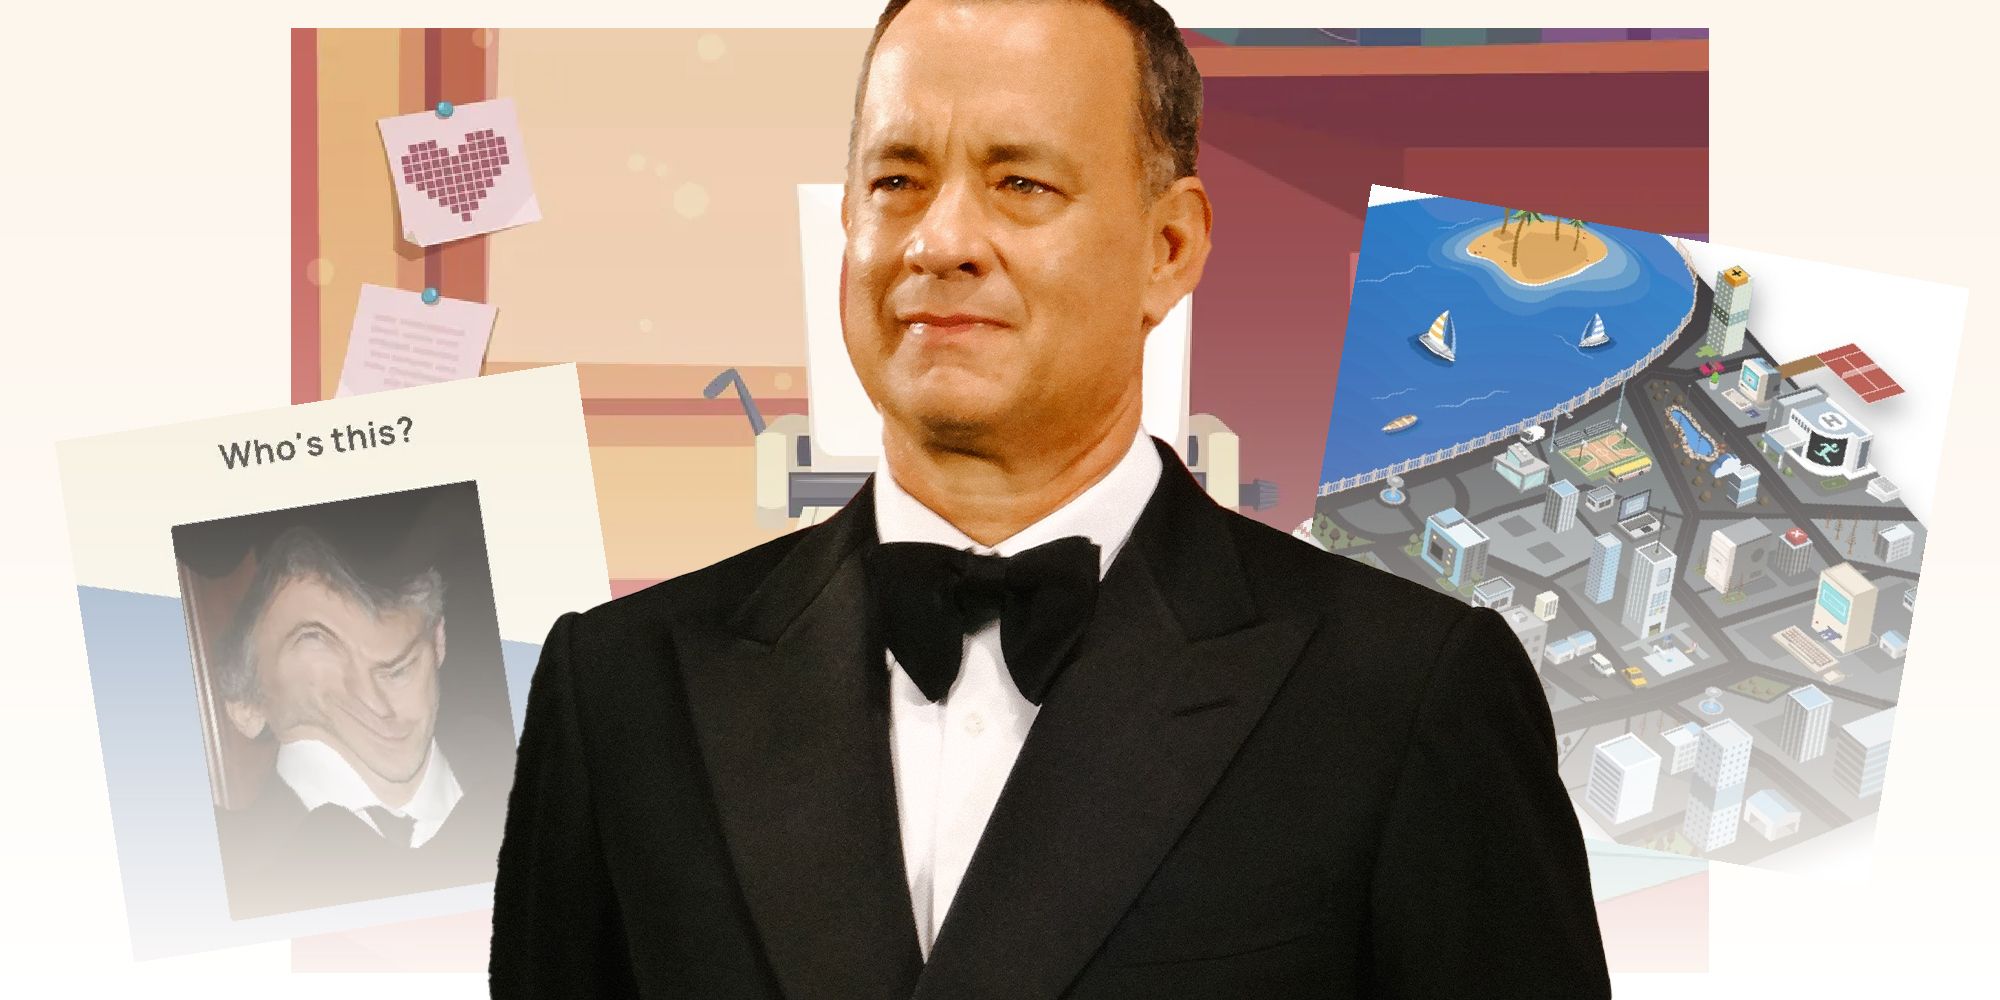 Tom Hanks game